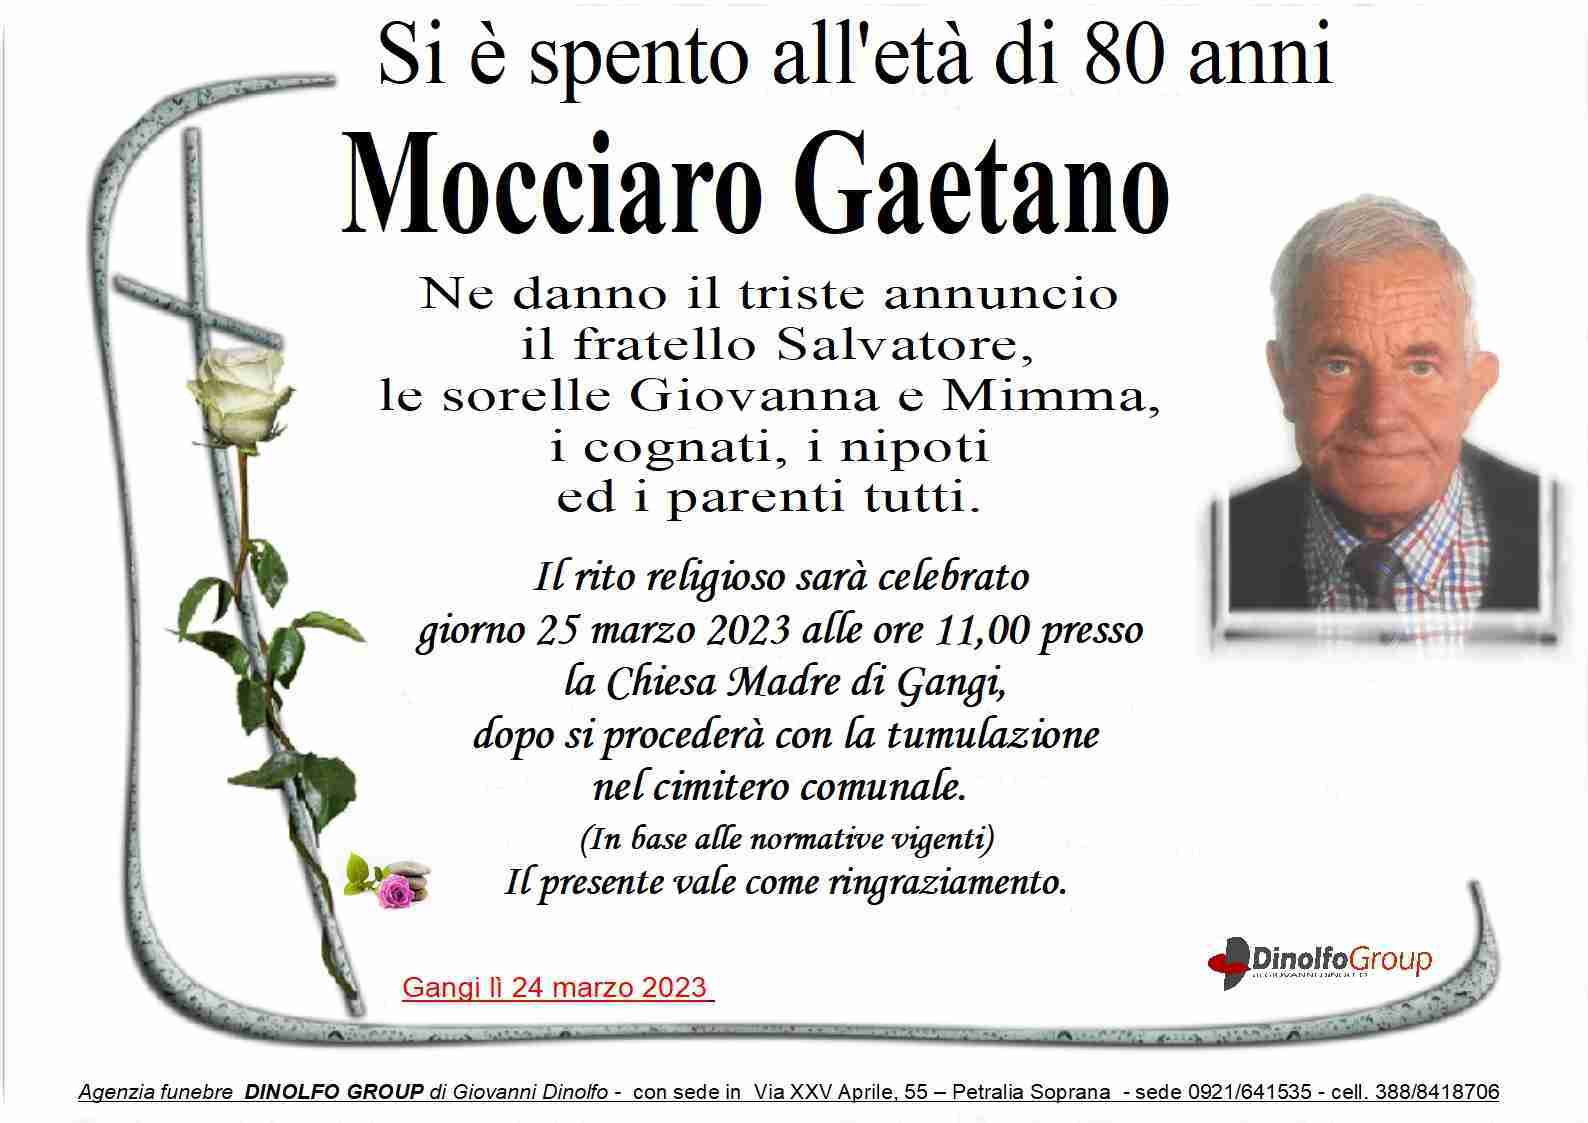 Gaetano Mocciaro